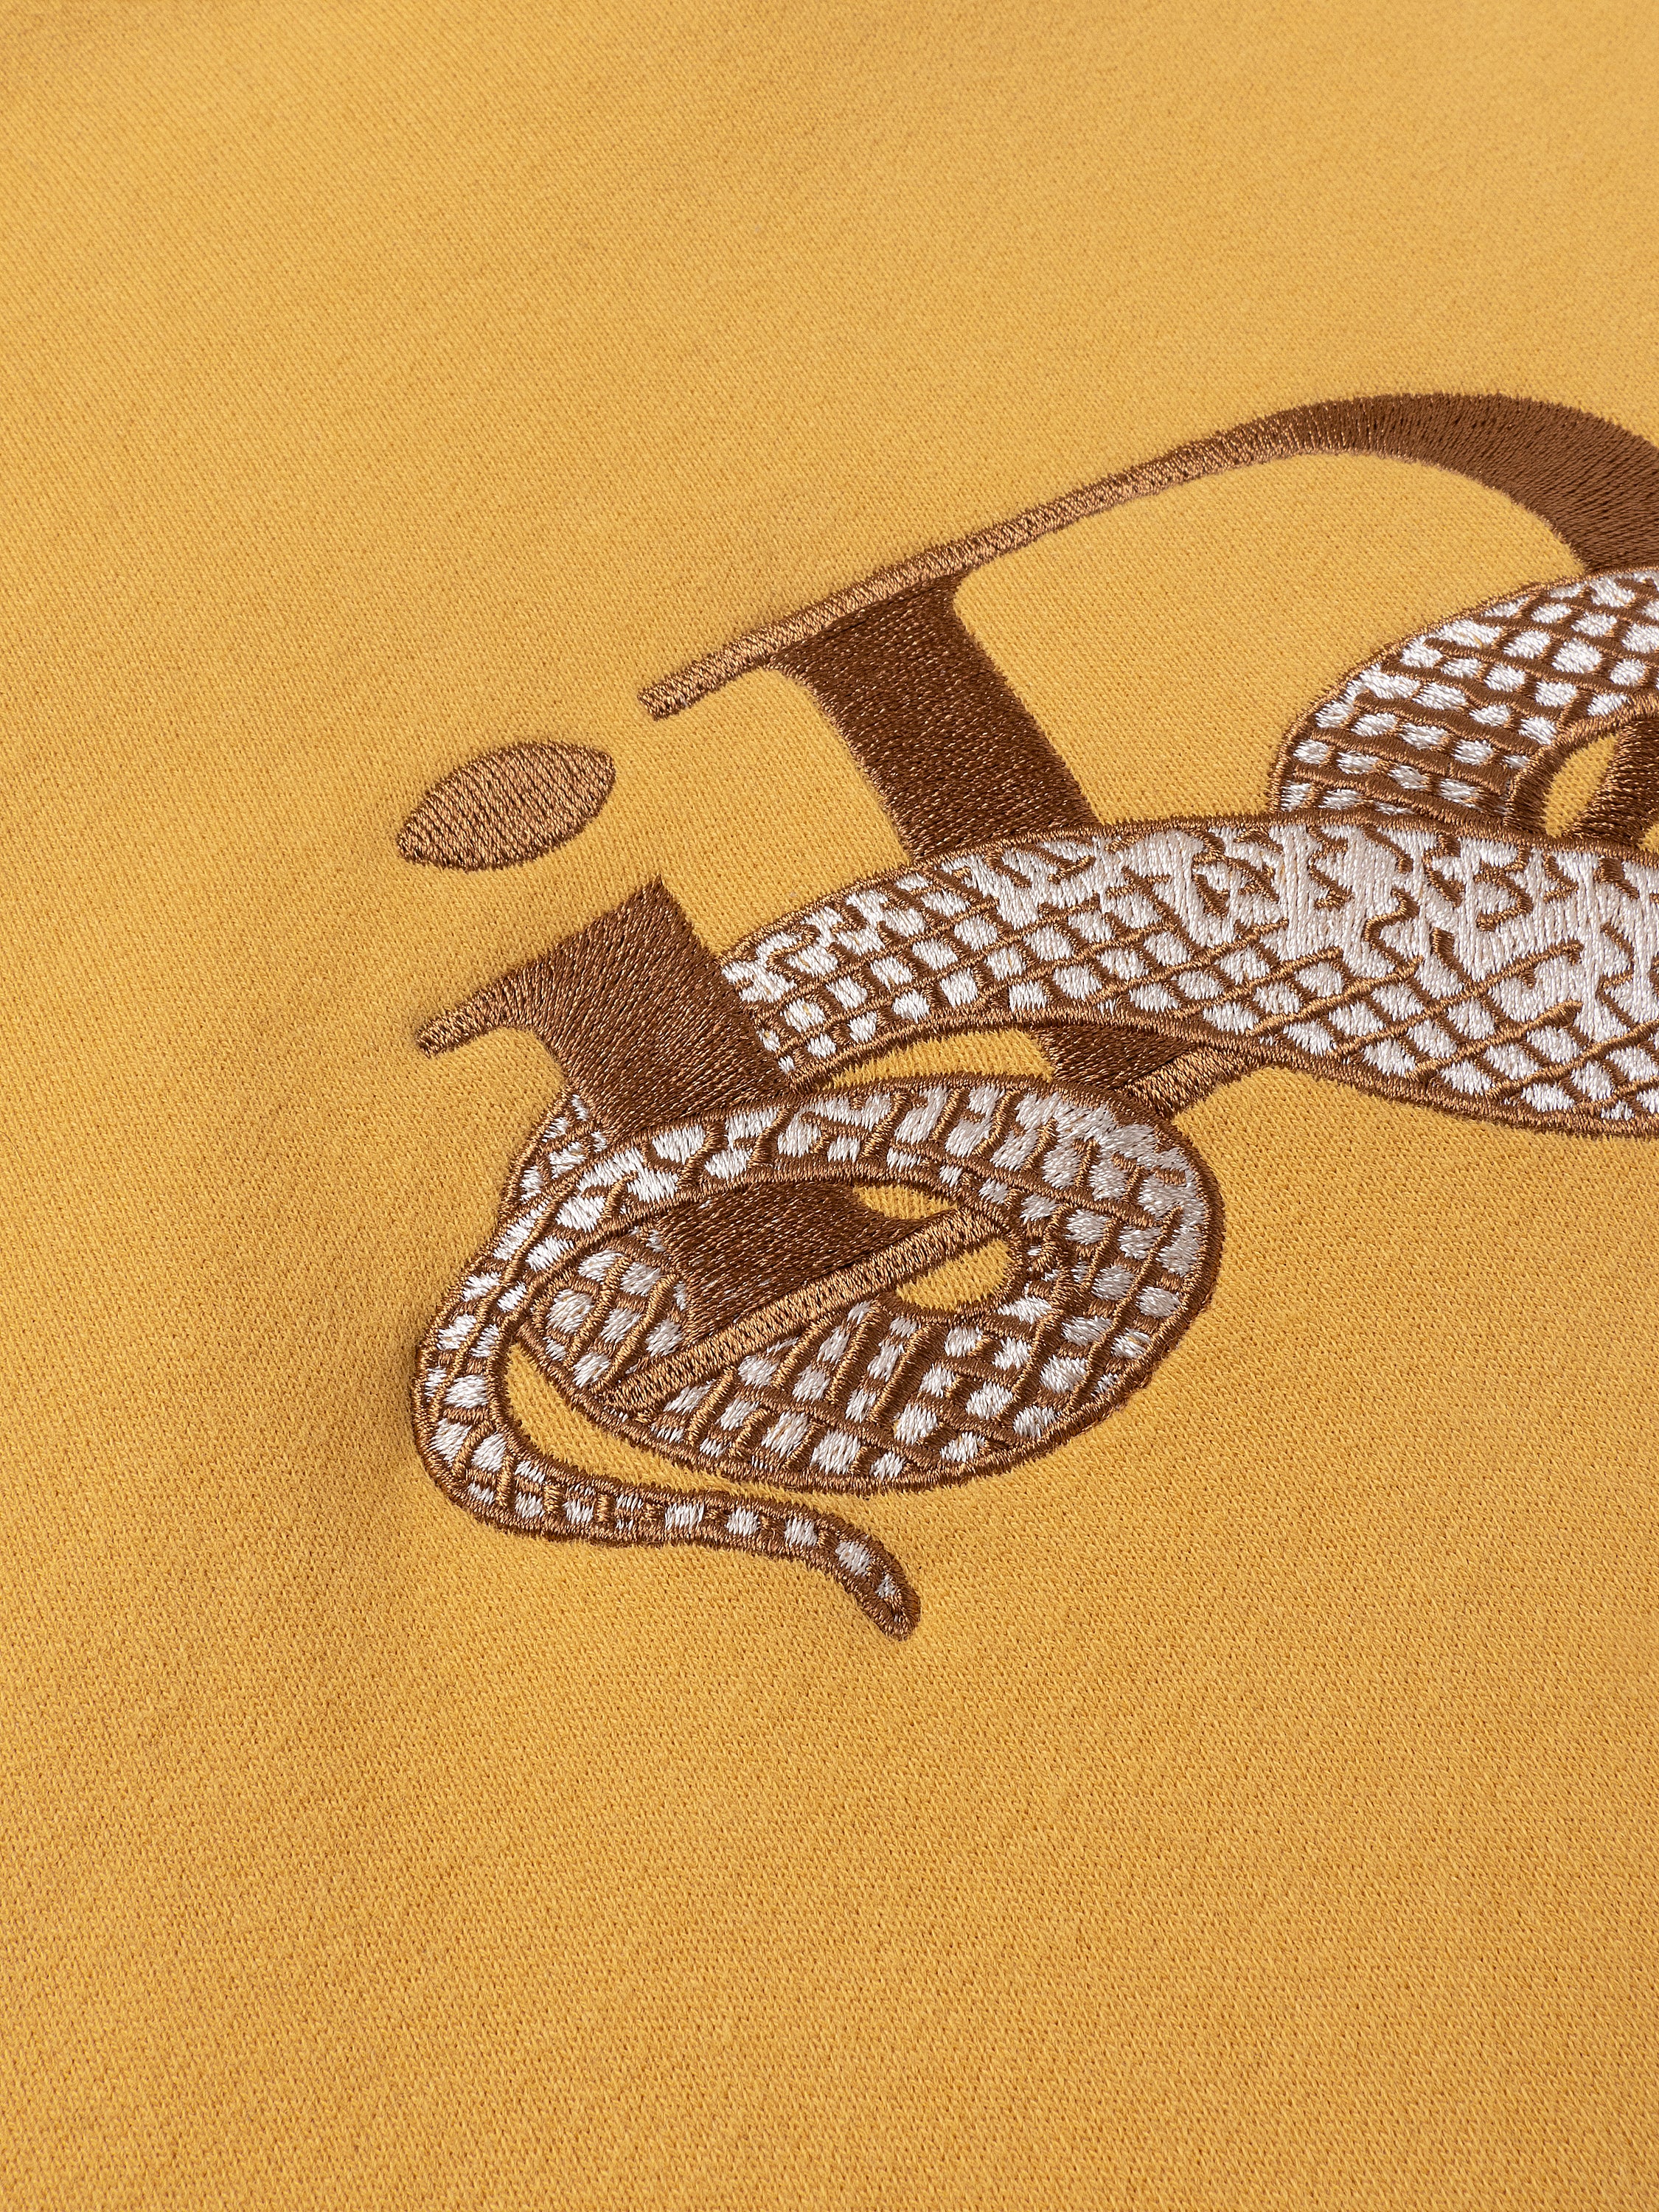 IDEASWAM フーディー パーカー snake logo